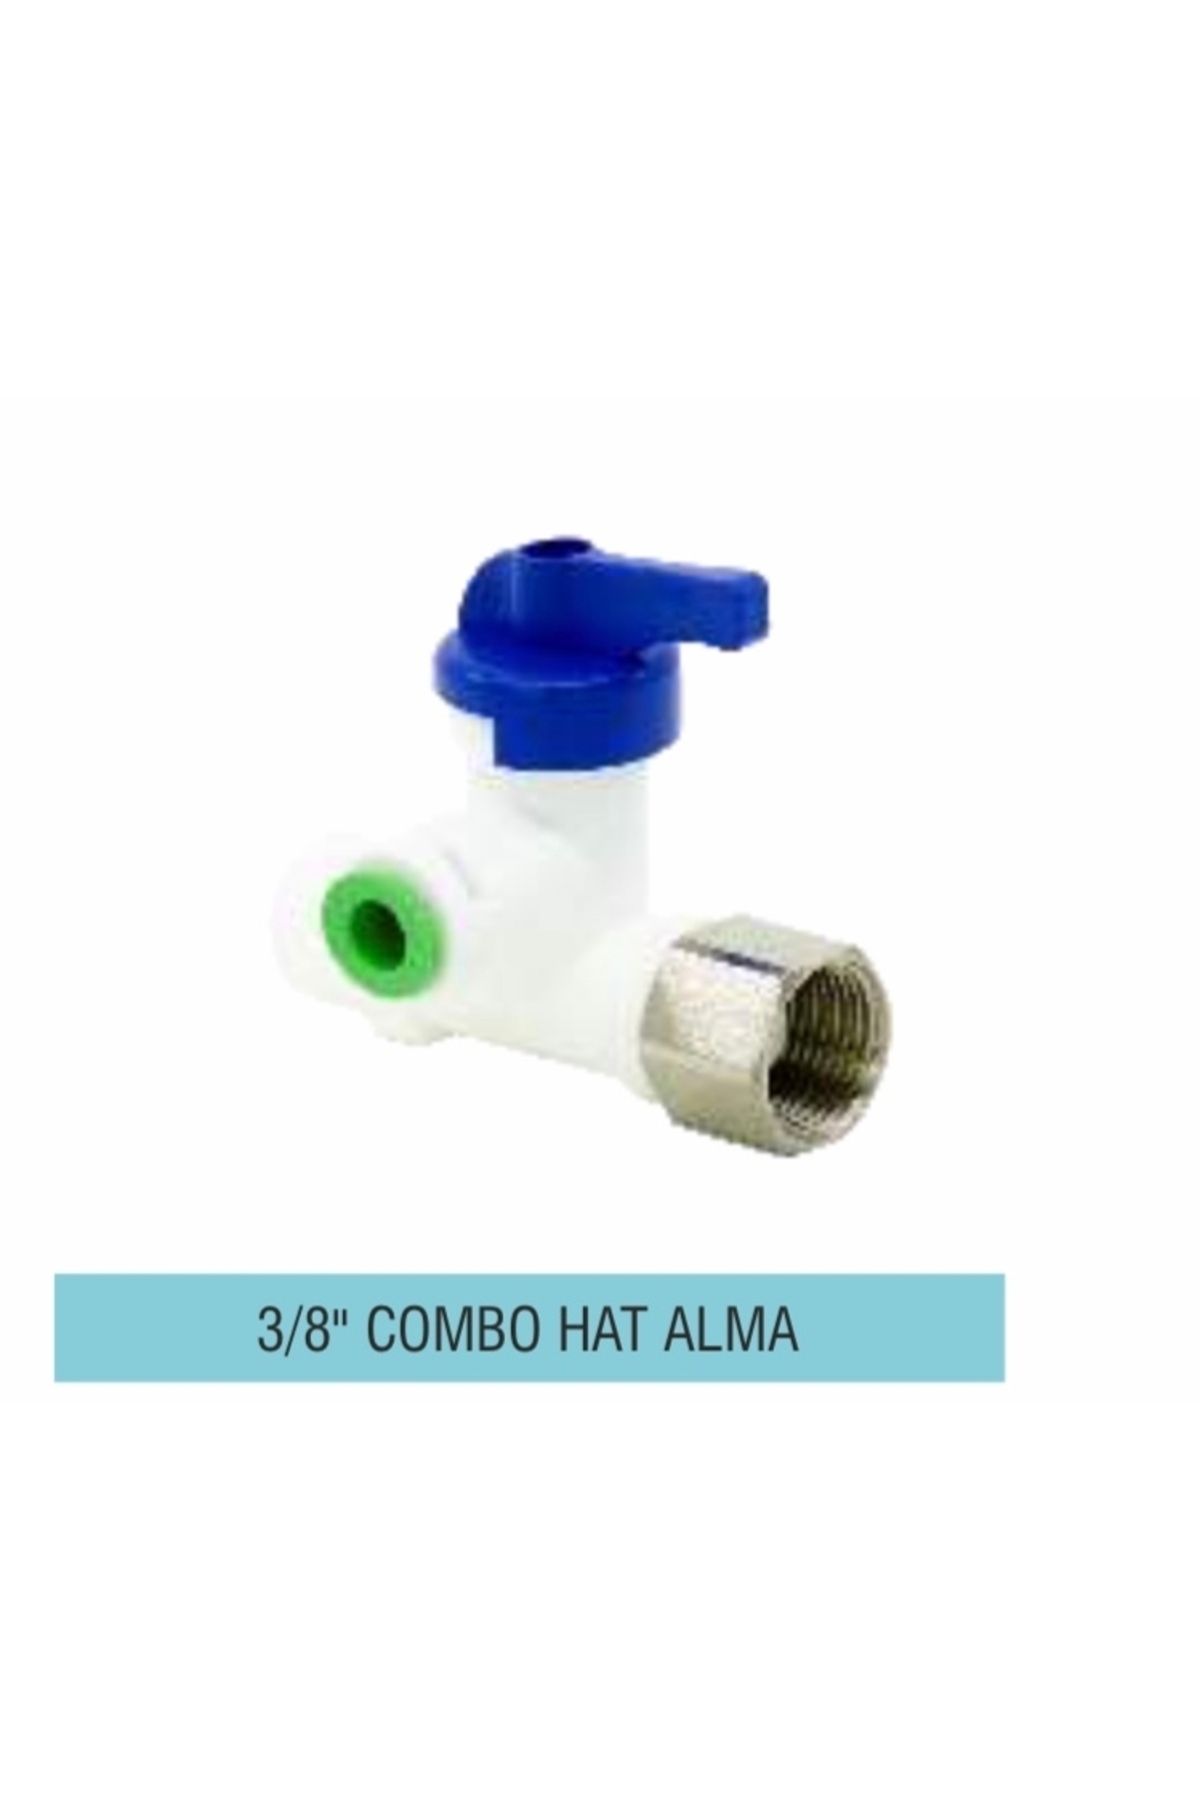 MONSTER Combo Hat Alma